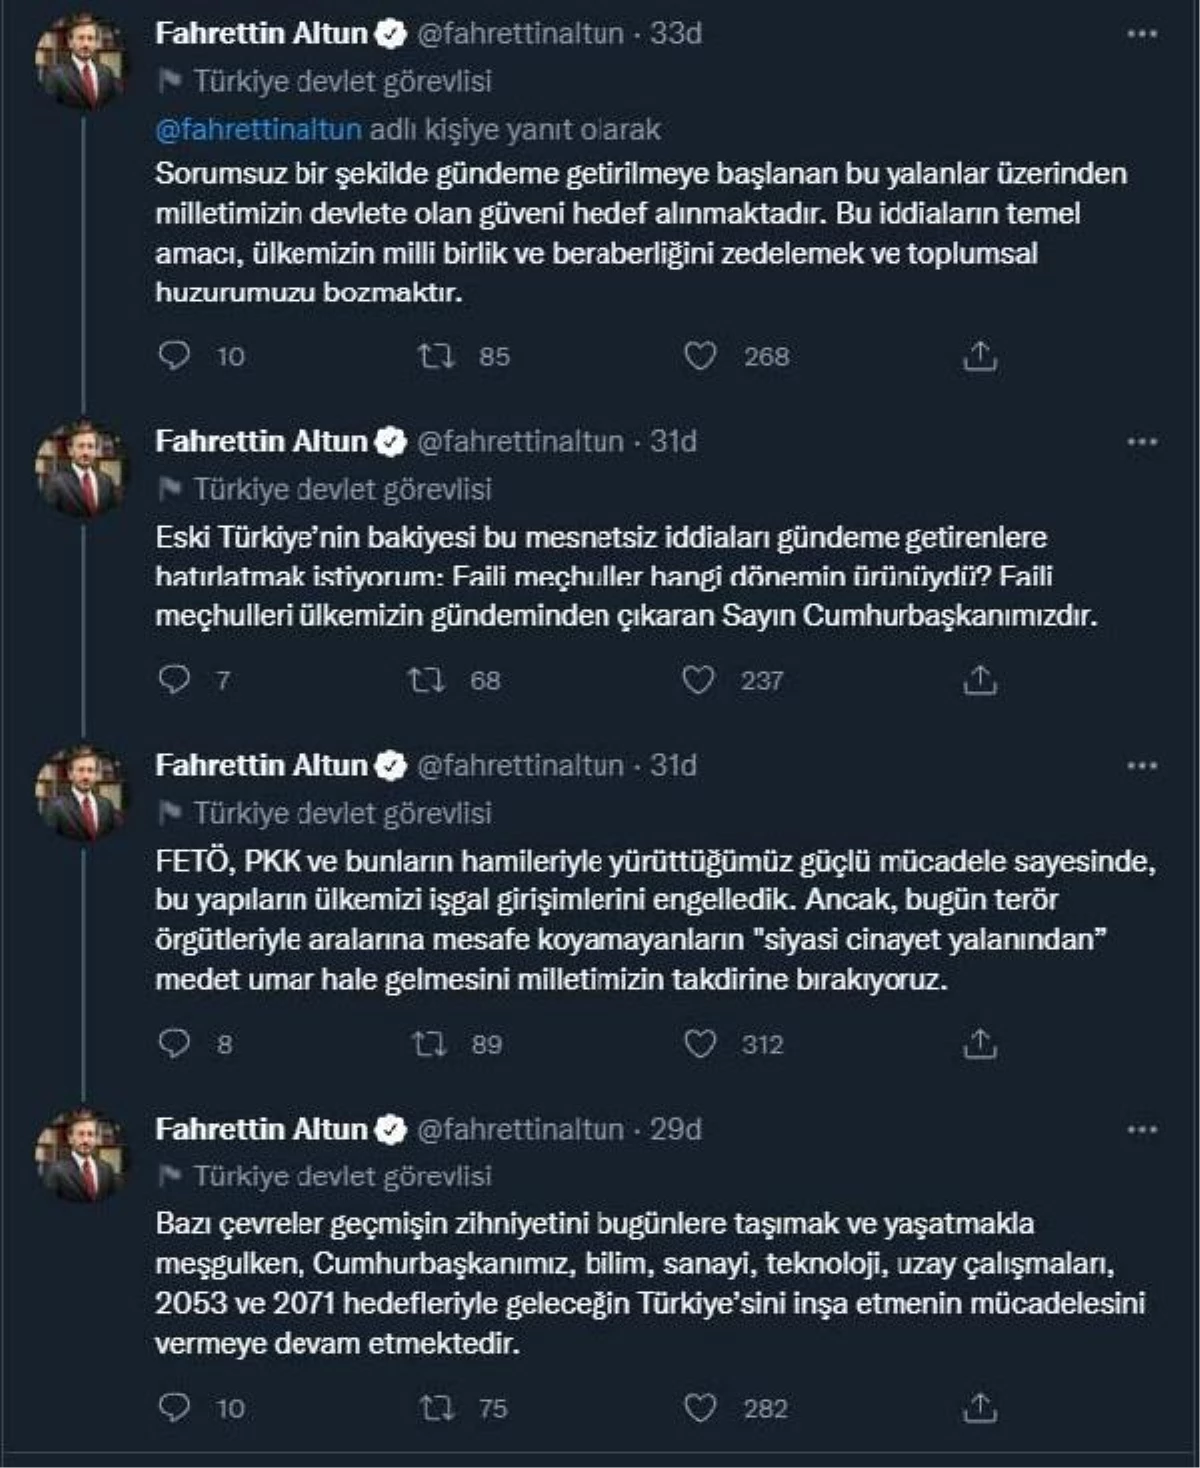 Cumhurbaşkanlığı İletişim Başkanı Altun\'dan "siyasi cinayetler işleneceği" iddiasına ilişkin açıklama Açıklaması